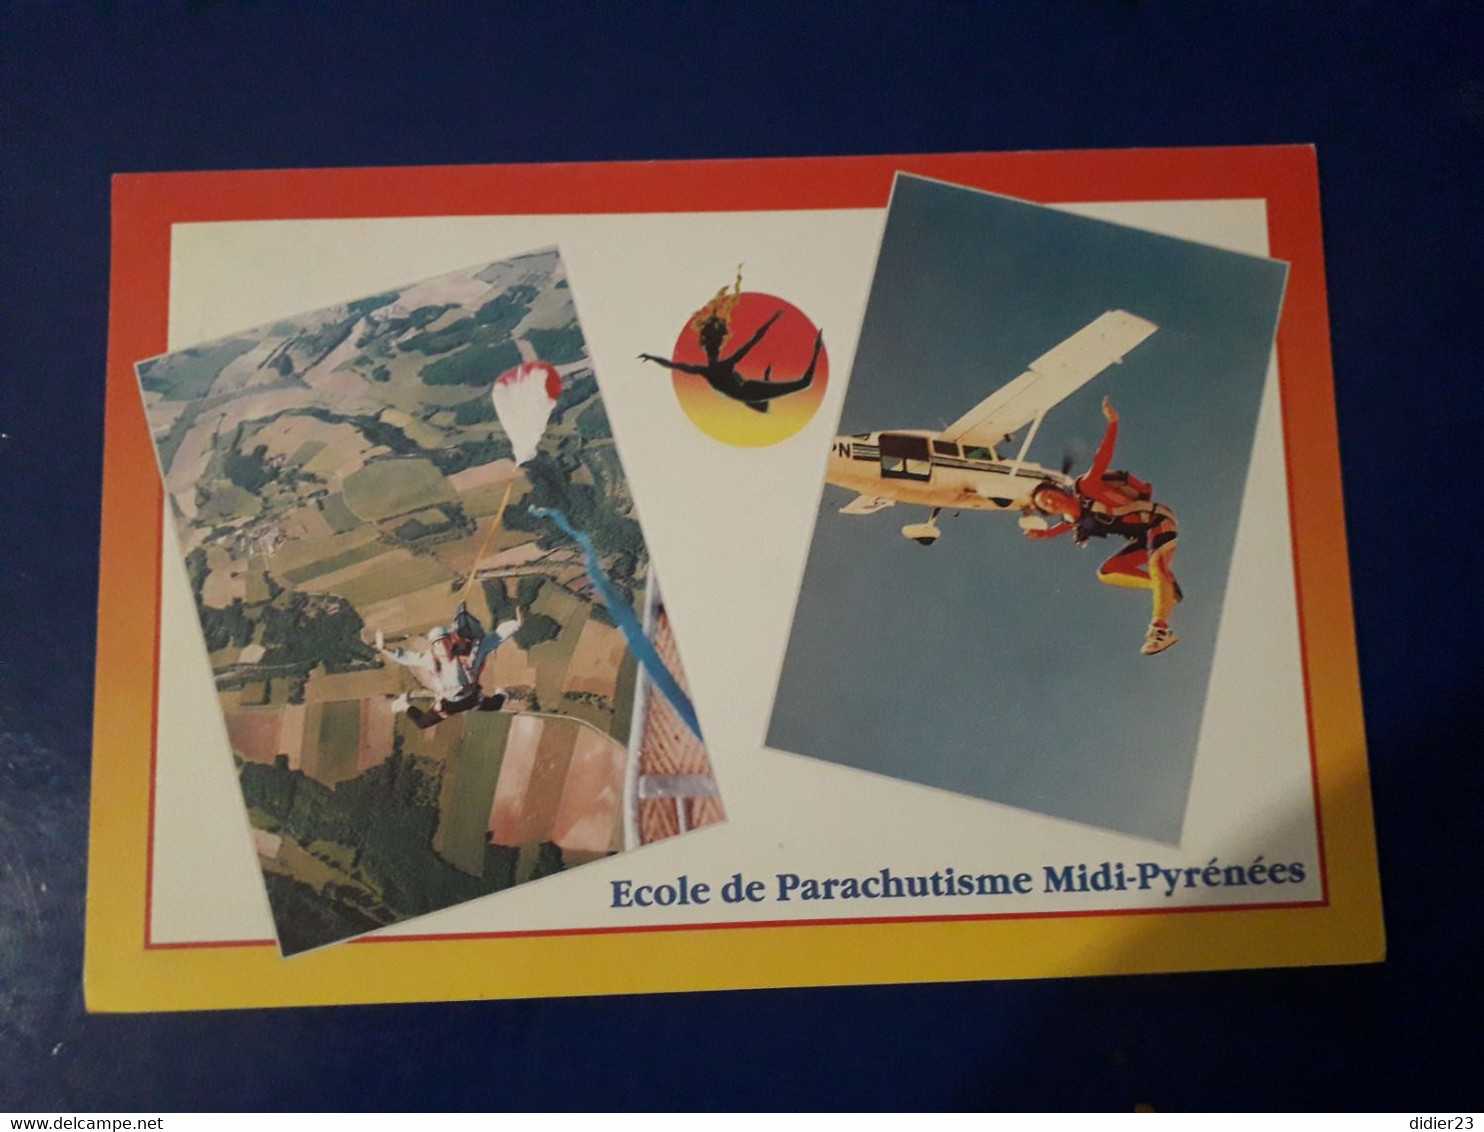 PARACHUTISME ECOLE - Parachutting